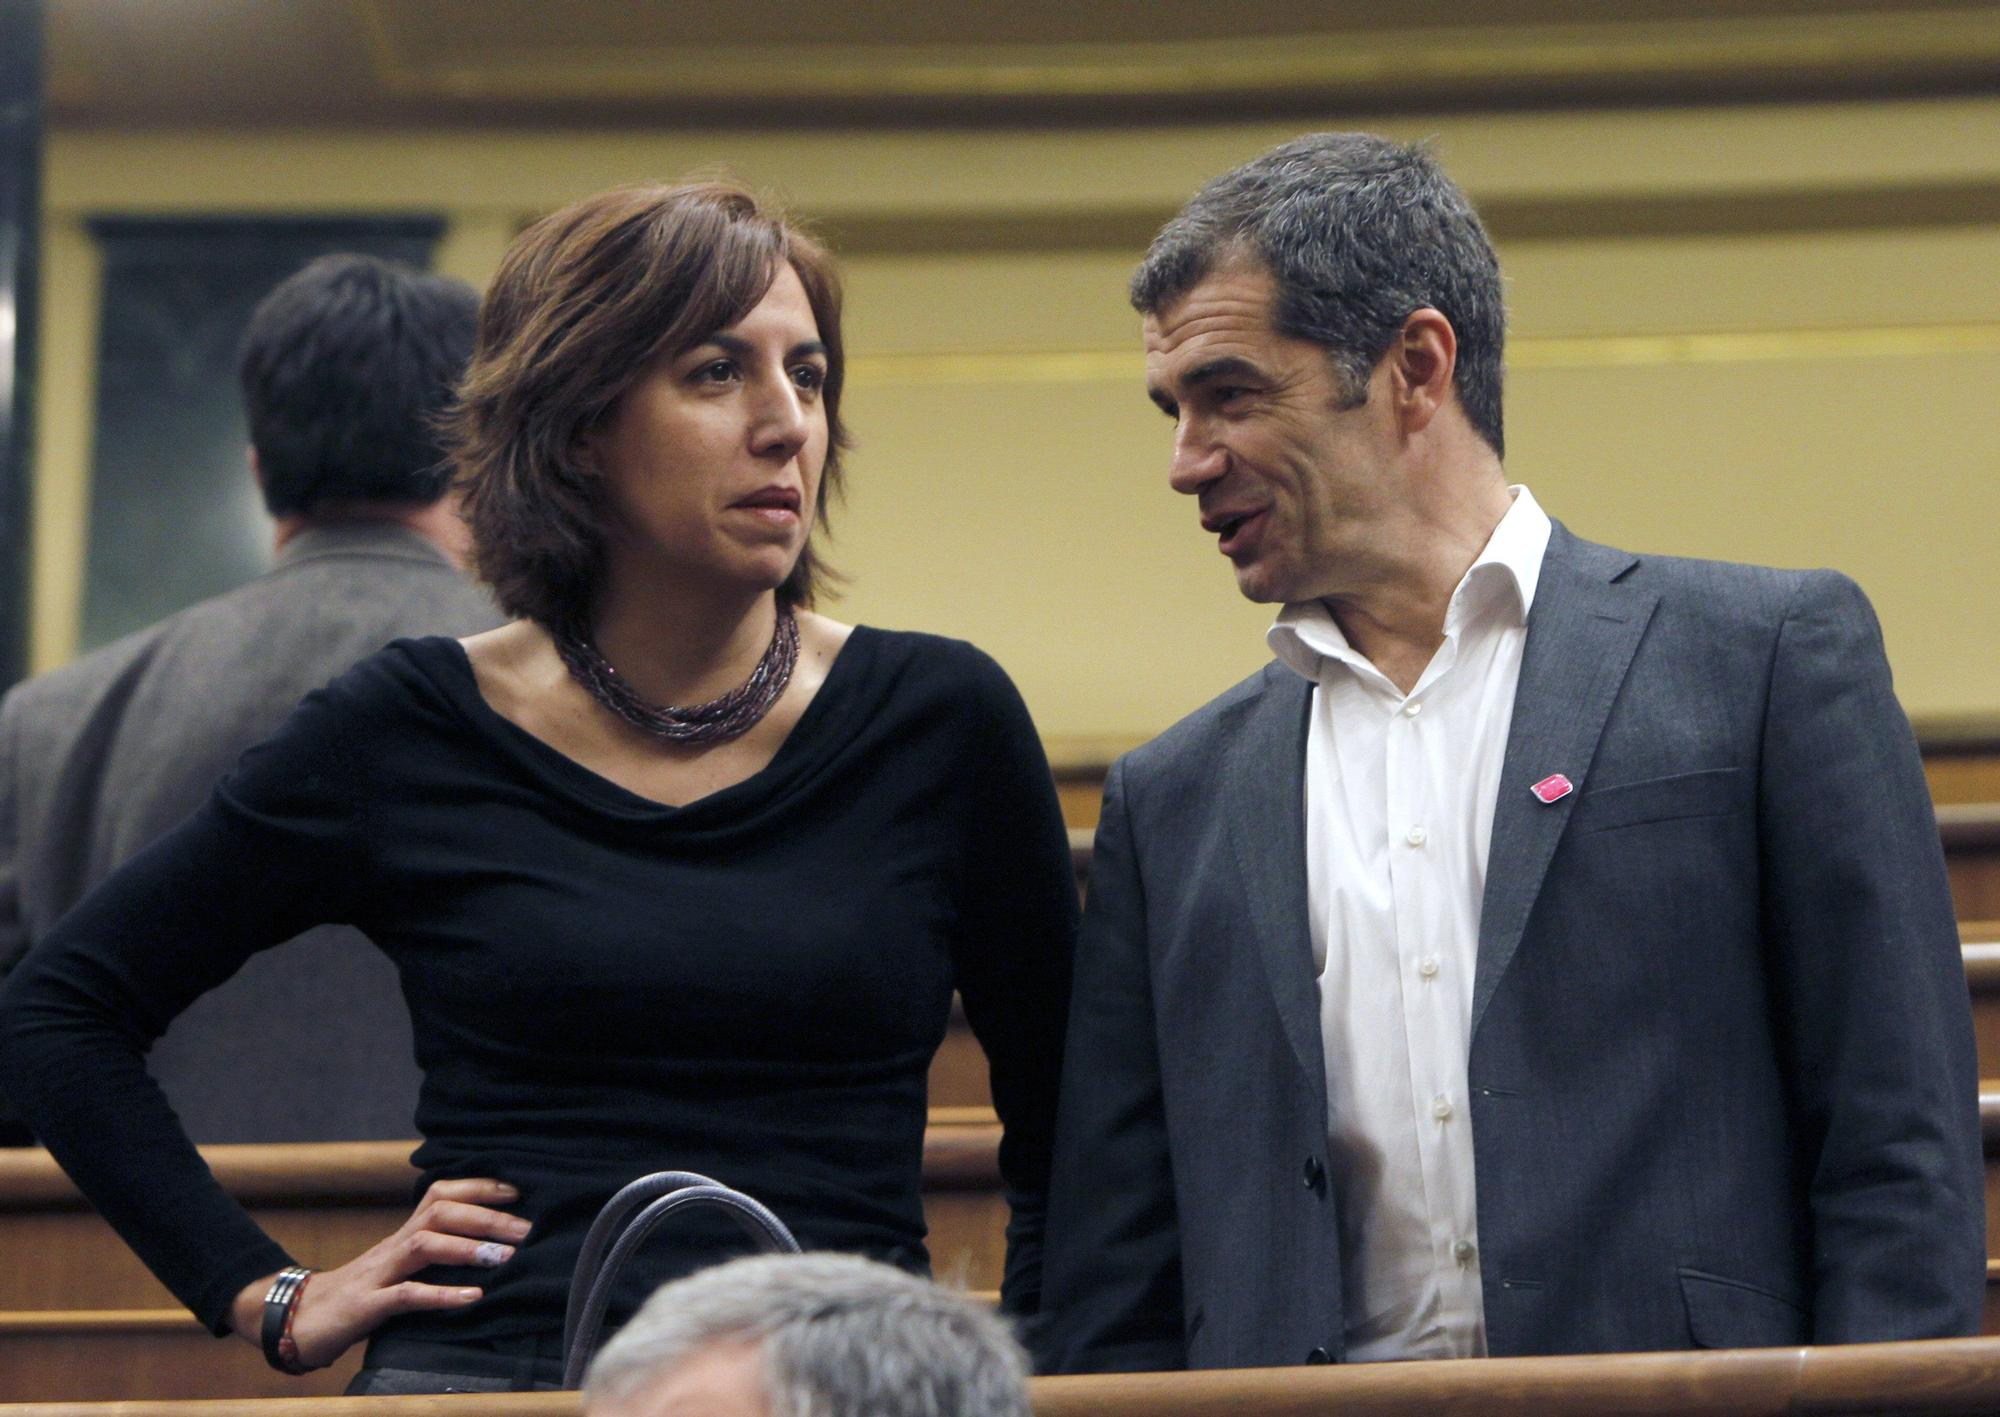 Irene Lozano y Toni Cantó conversan n el Congreso de los Diputados, en una imagen de archivo de 2011.